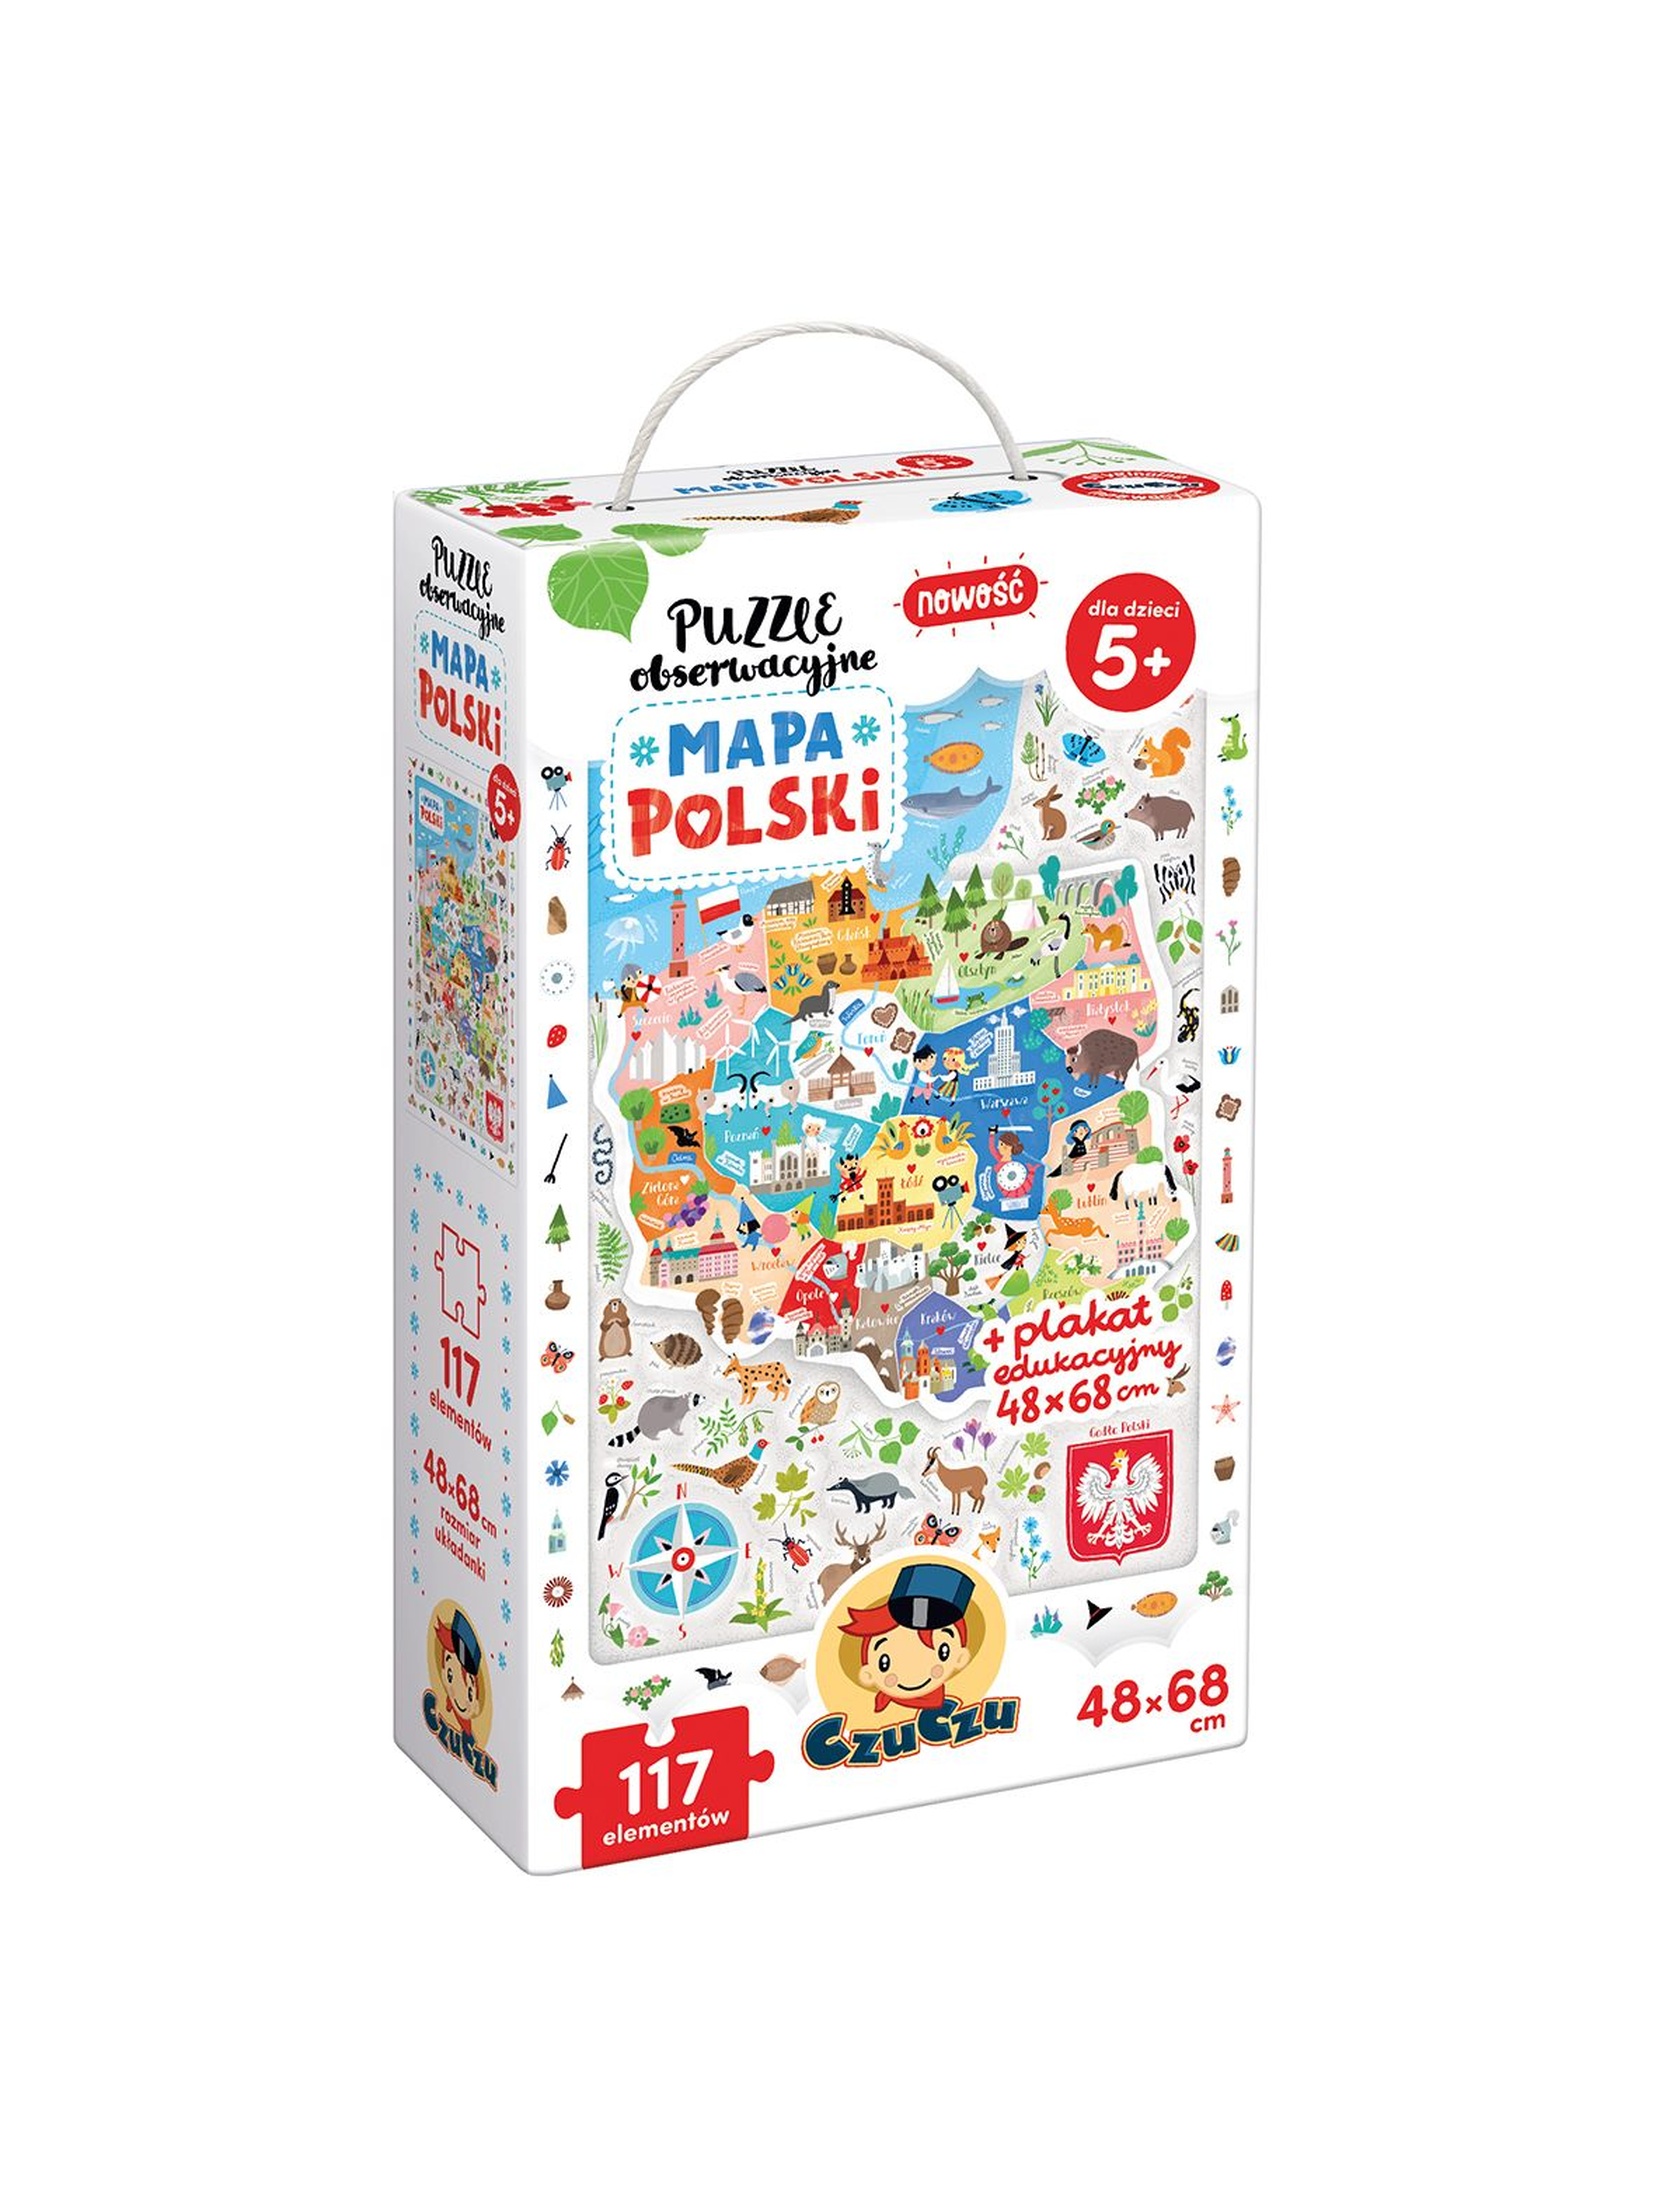 Puzzle obserwacyjne Mapa Polski CzuCzu wiek 5+